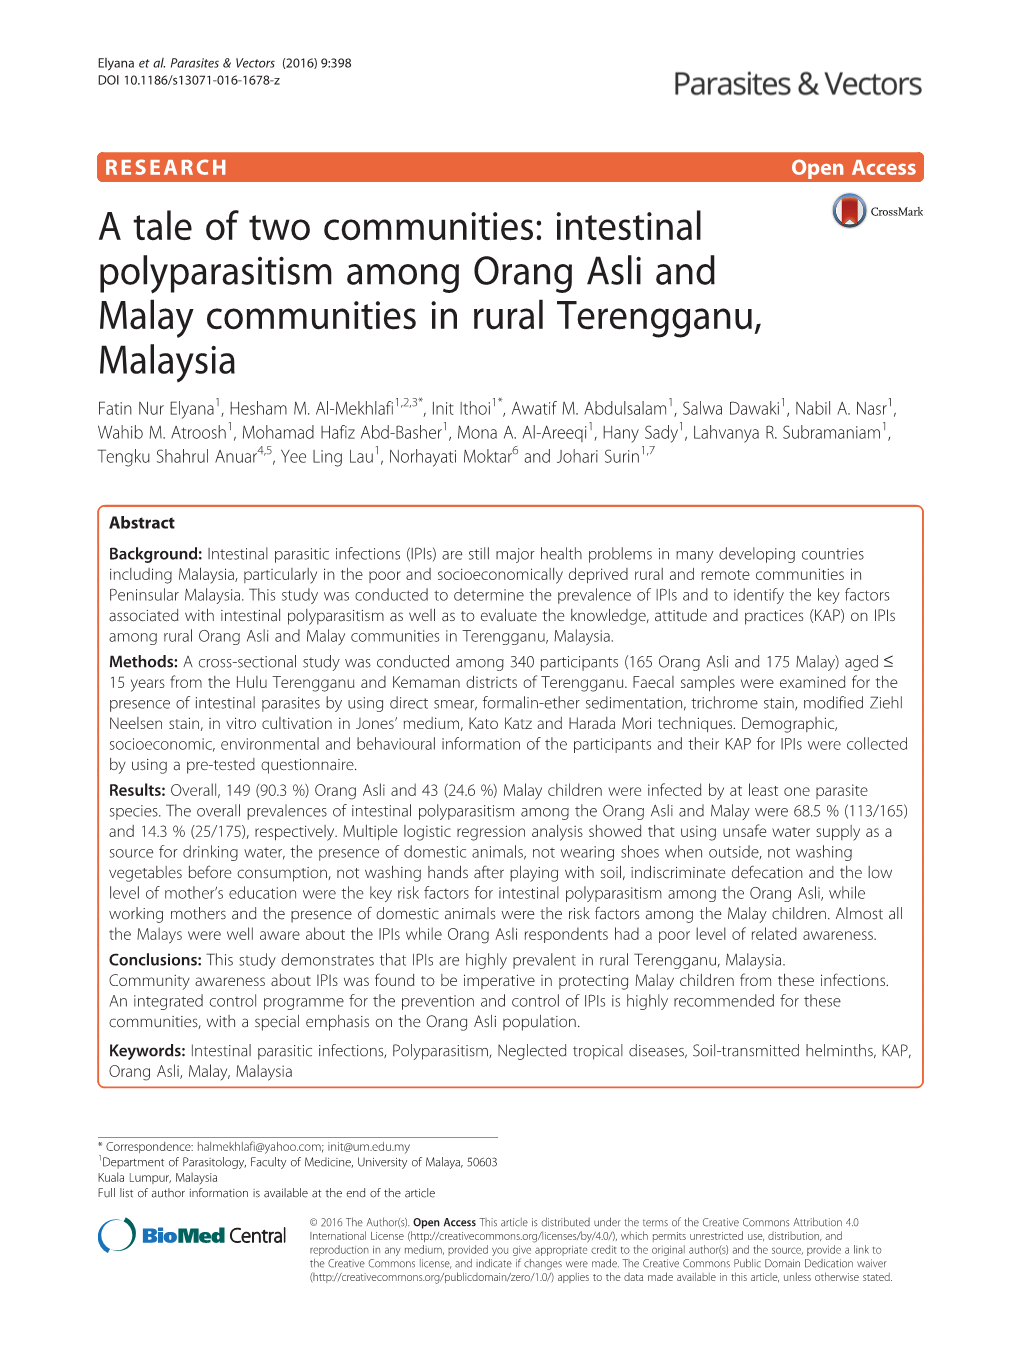 Intestinal Polyparasitism Among Orang Asli and Malay Communities in Rural Terengganu, Malaysia Fatin Nur Elyana1, Hesham M